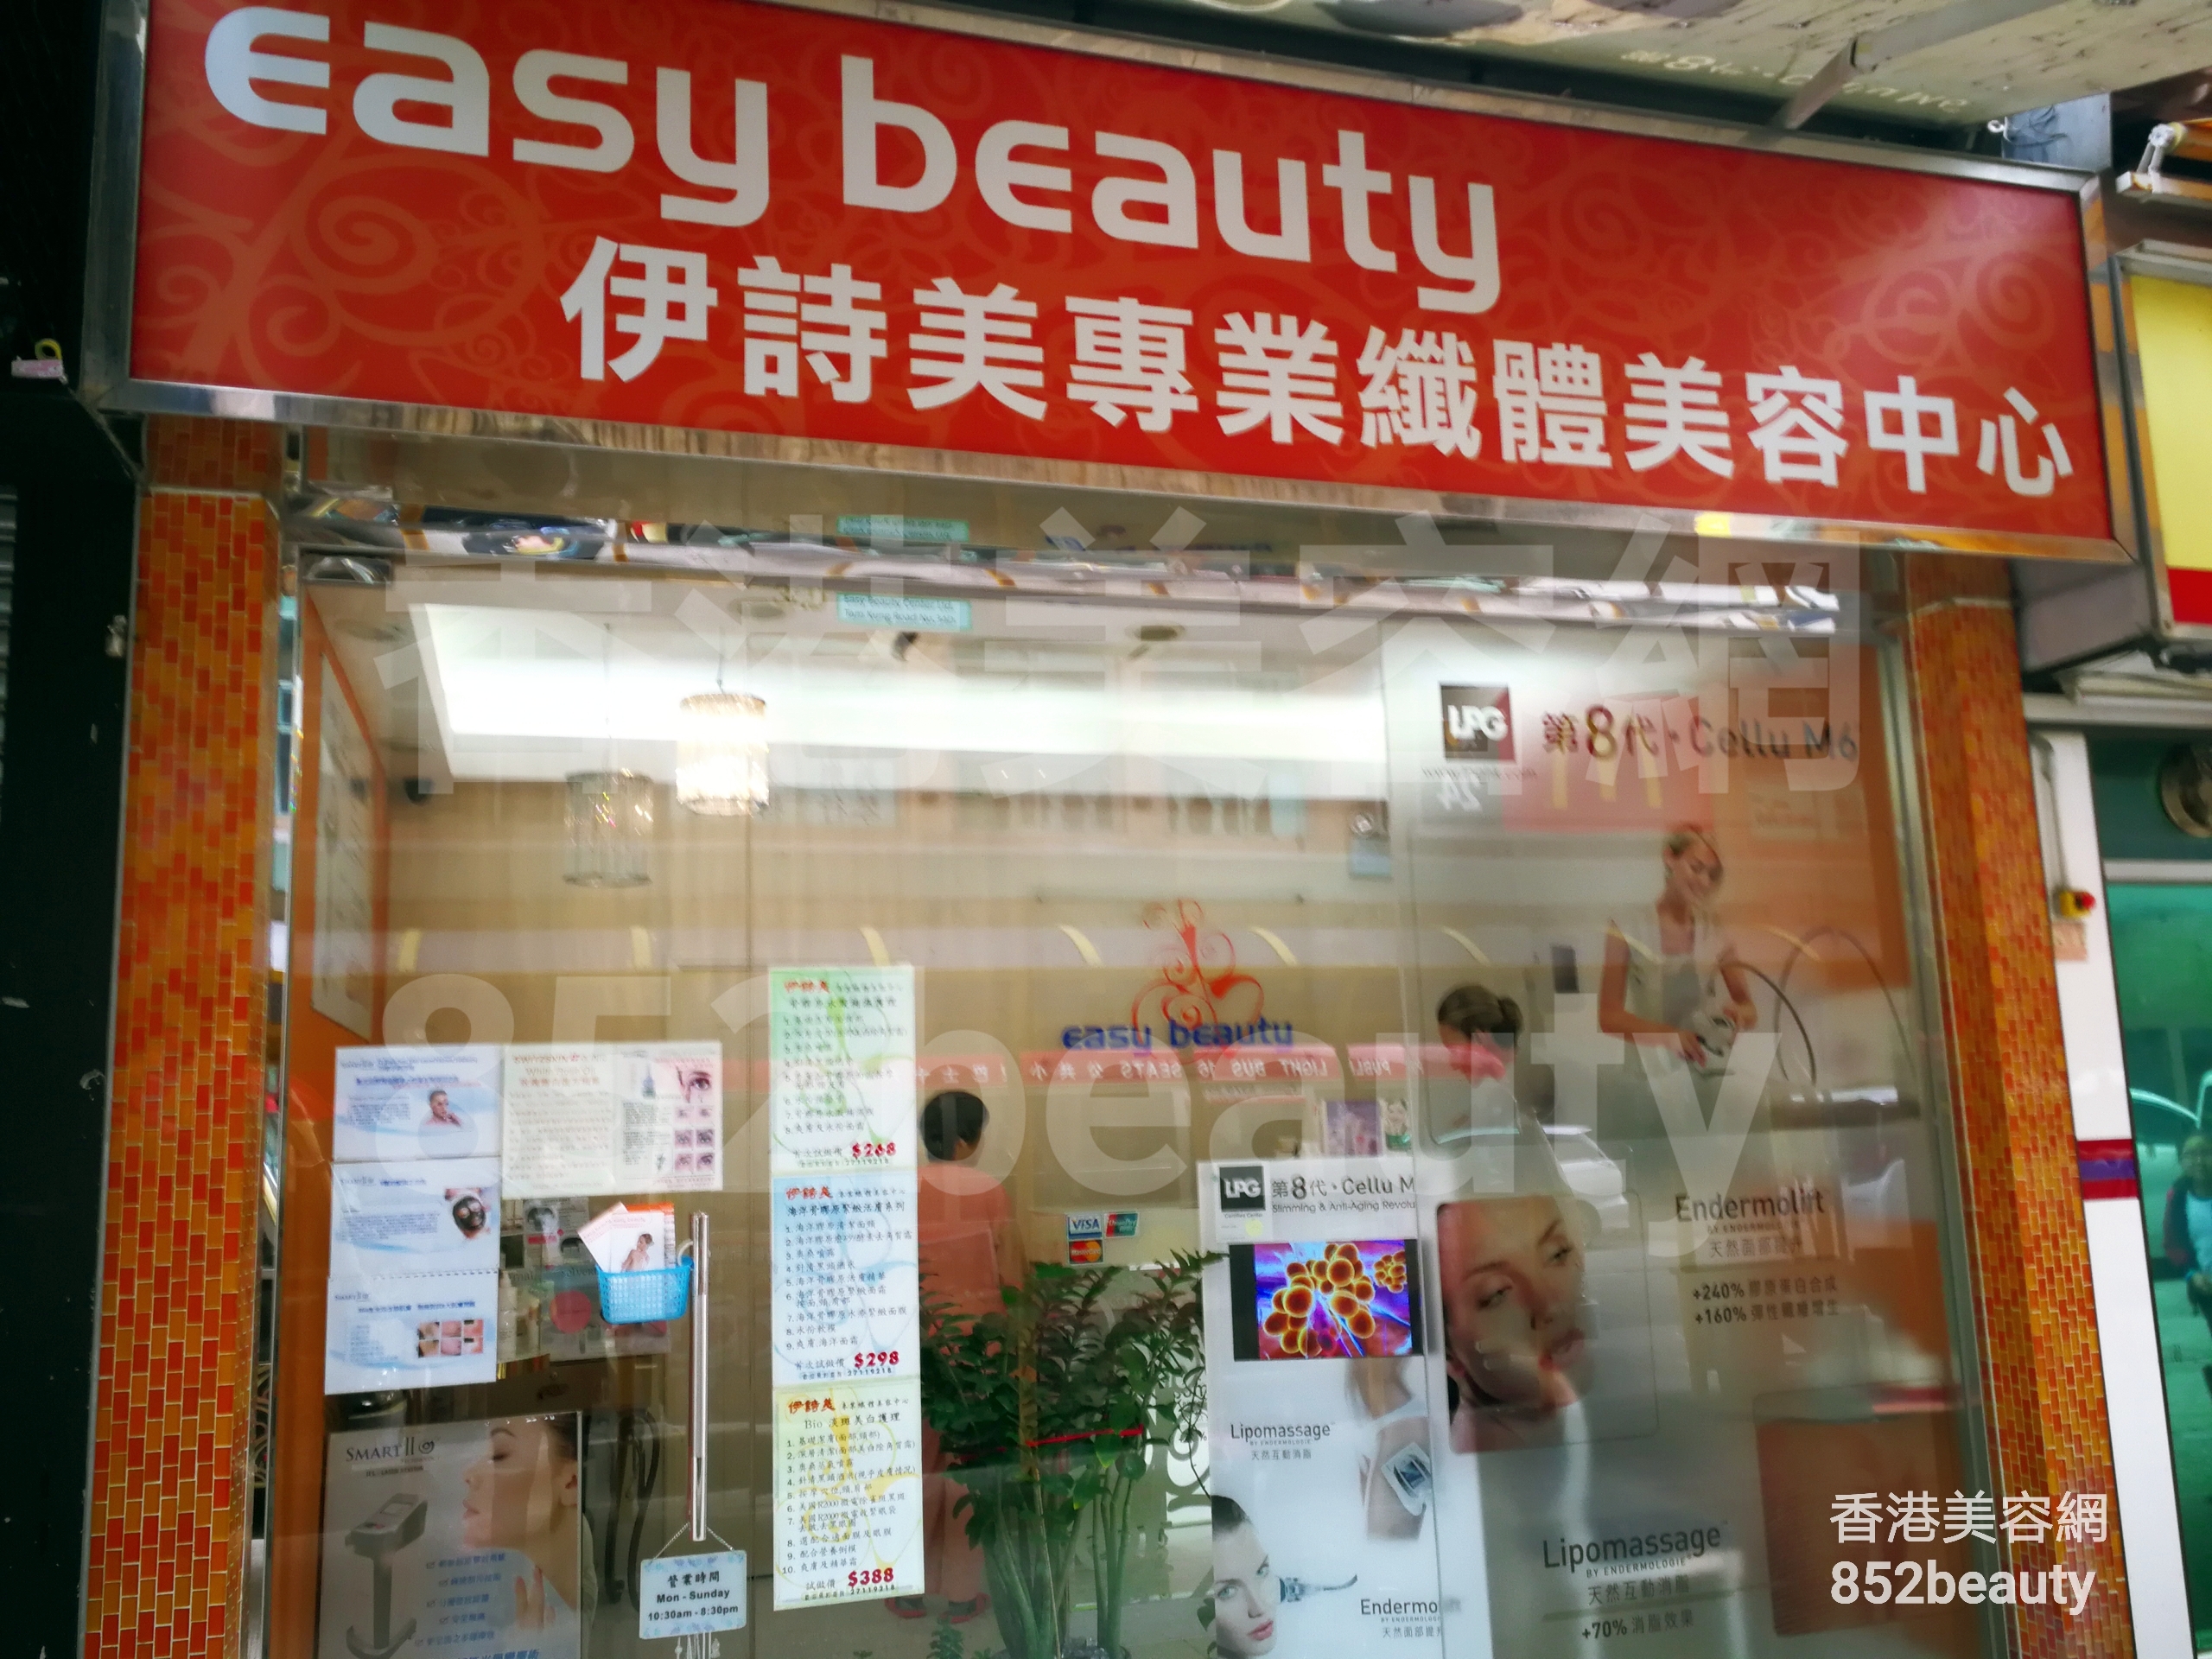 脱毛: Easy beauty 伊詩美專業纖體美容中心